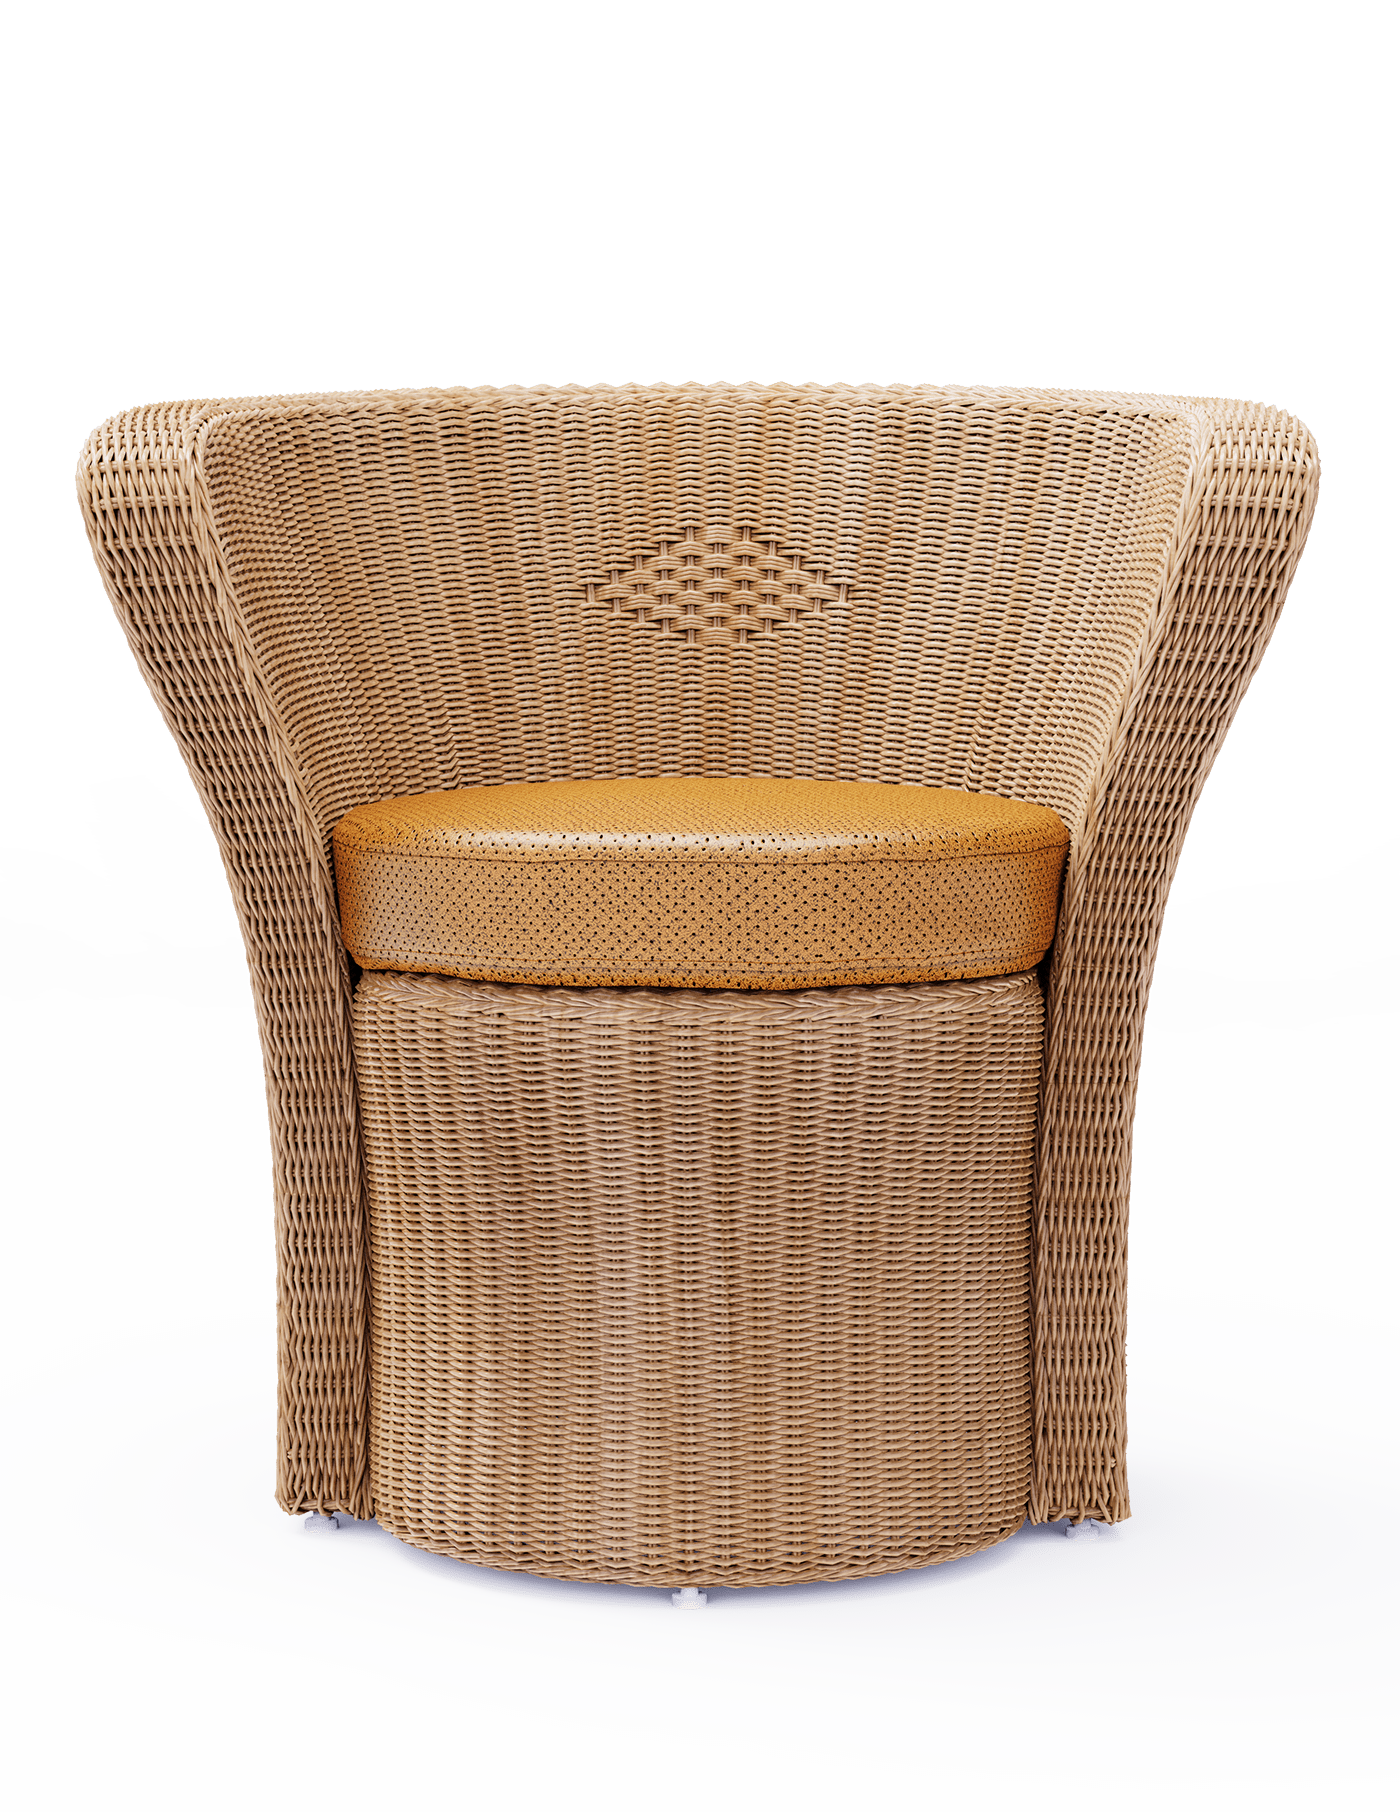 3d modeling basket blender furniture rattan Render visualization wicker furniture